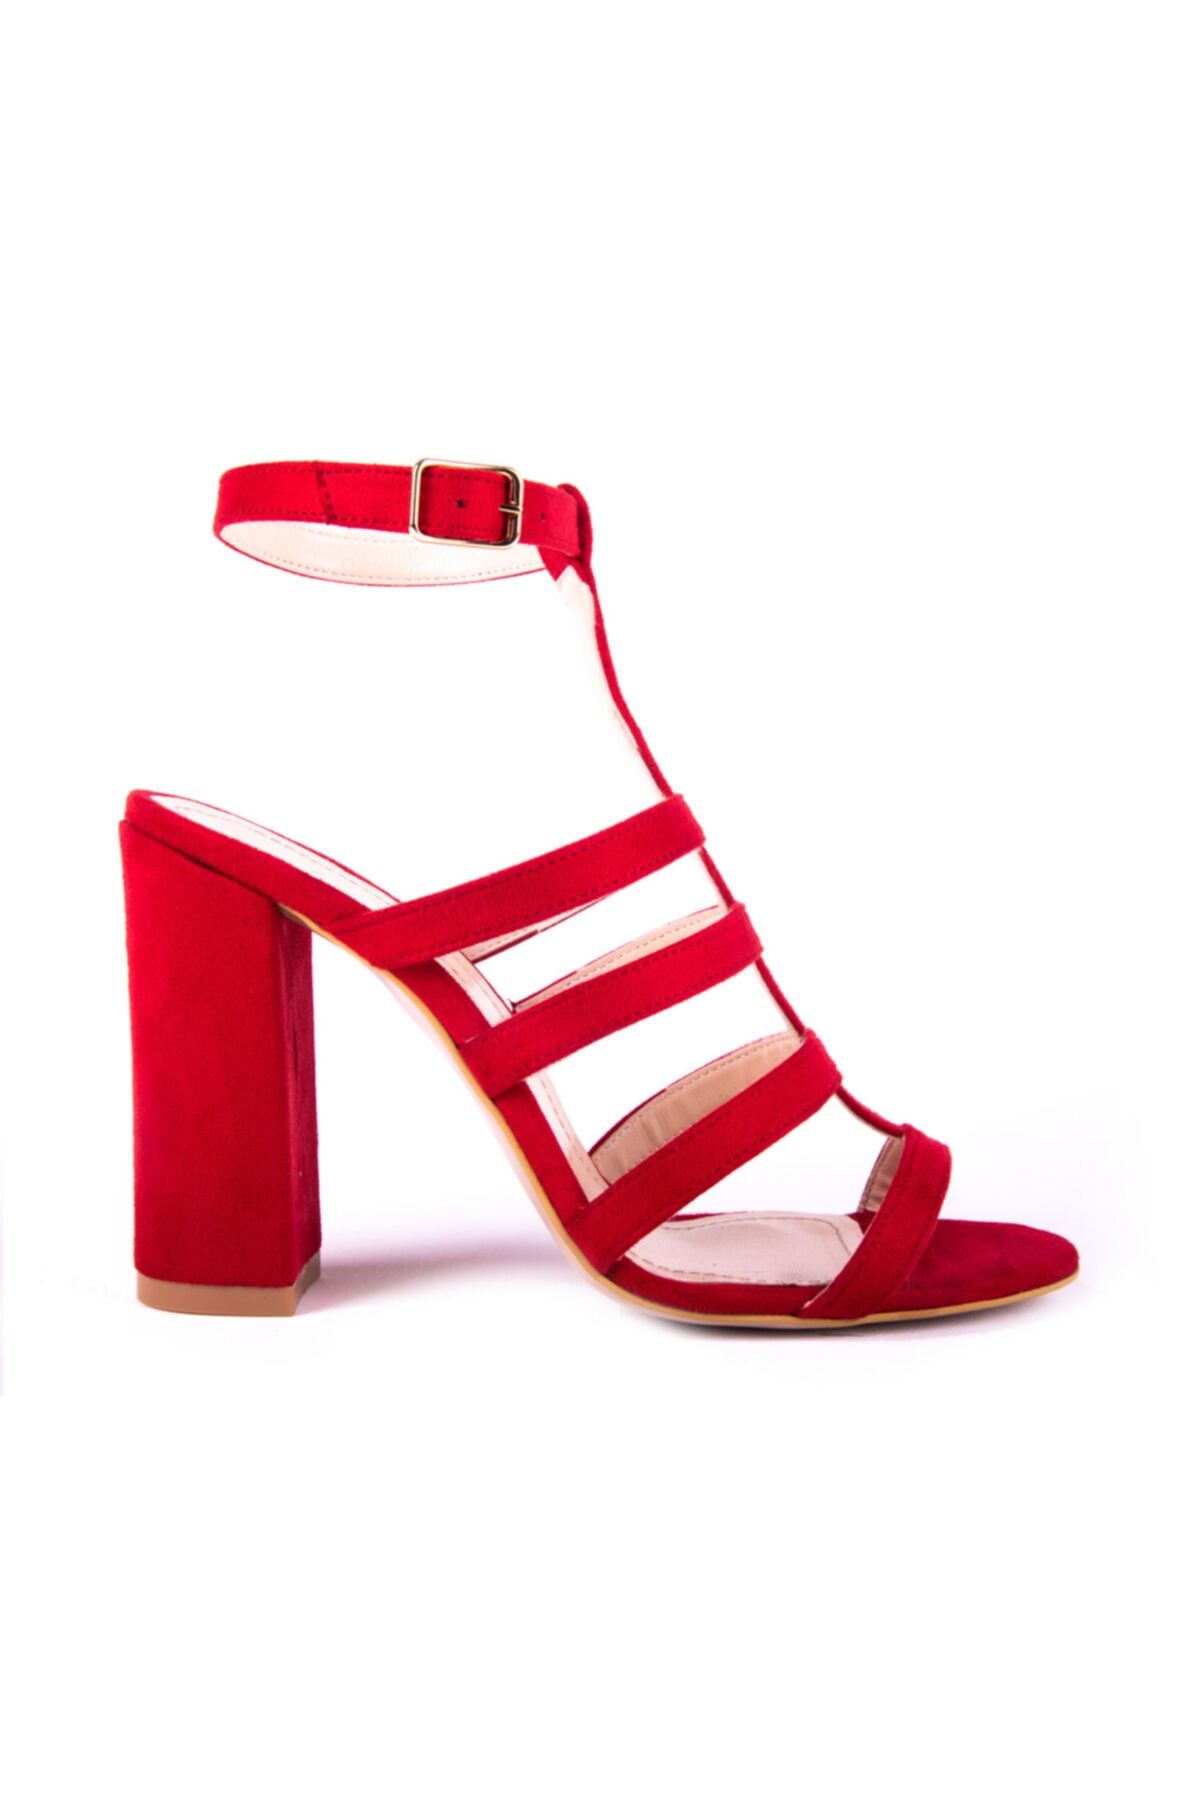 Divum Kırmızı Süet Topuklu Ayakkabı